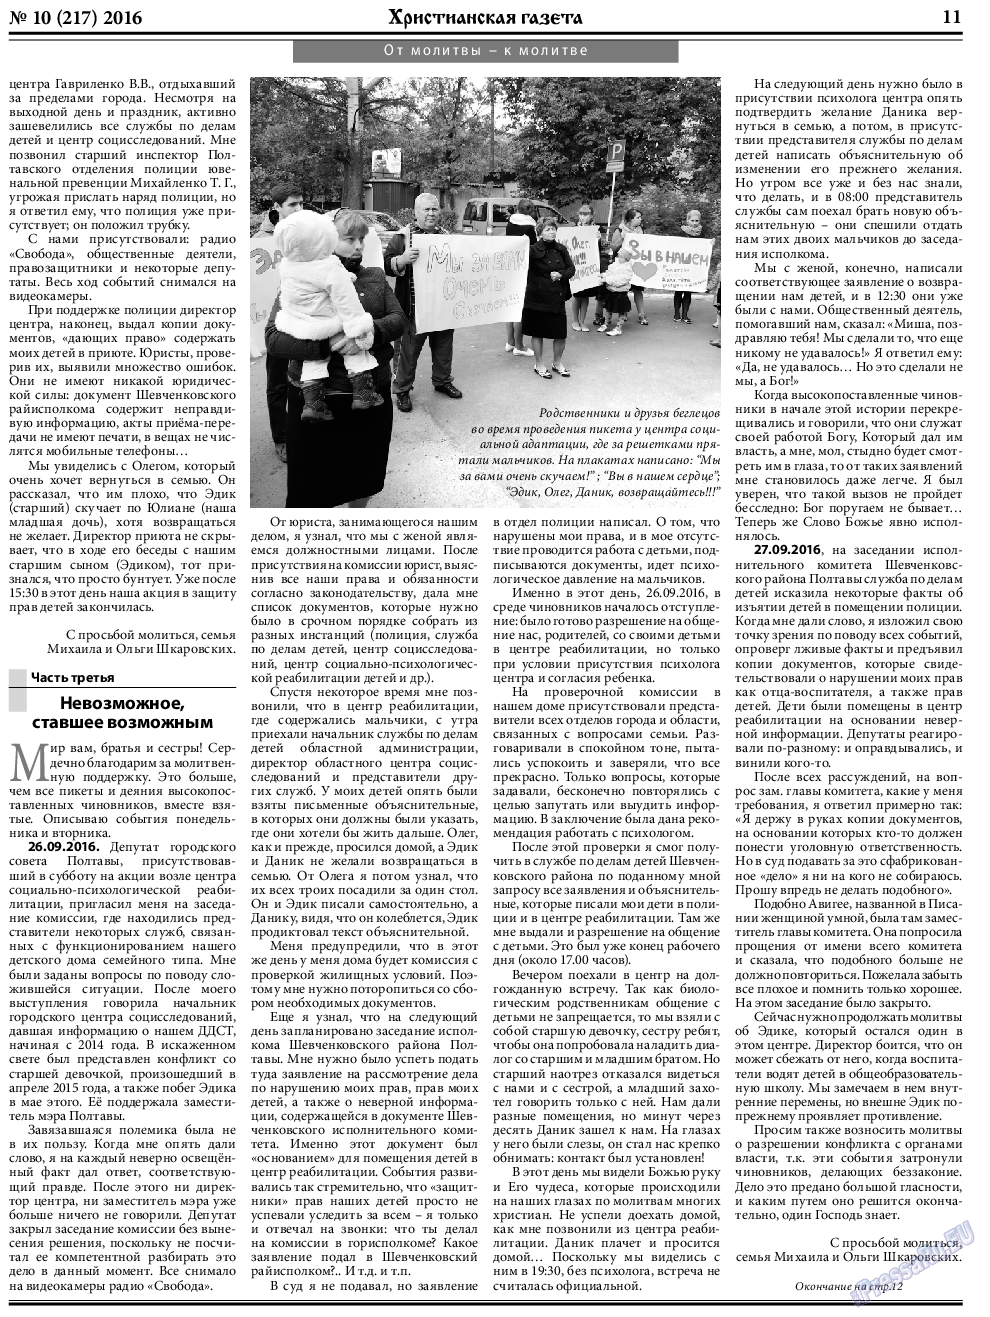 Христианская газета, газета. 2016 №10 стр.11